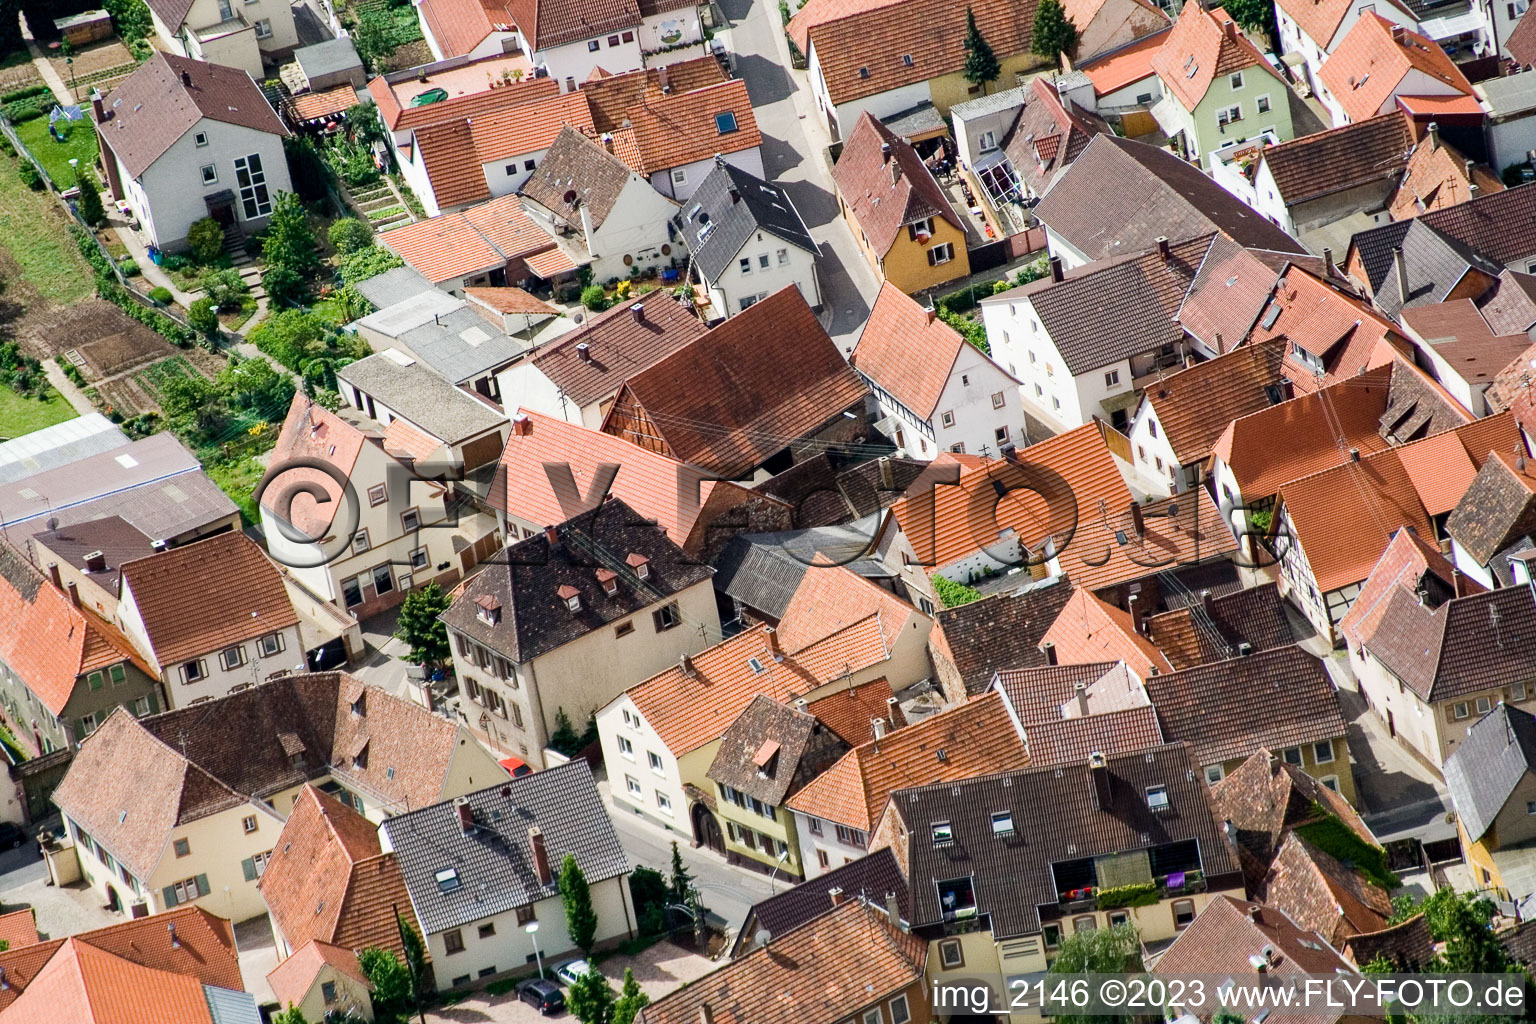 Ortsteil Arzheim in Landau in der Pfalz im Bundesland Rheinland-Pfalz, Deutschland aus der Drohnenperspektive